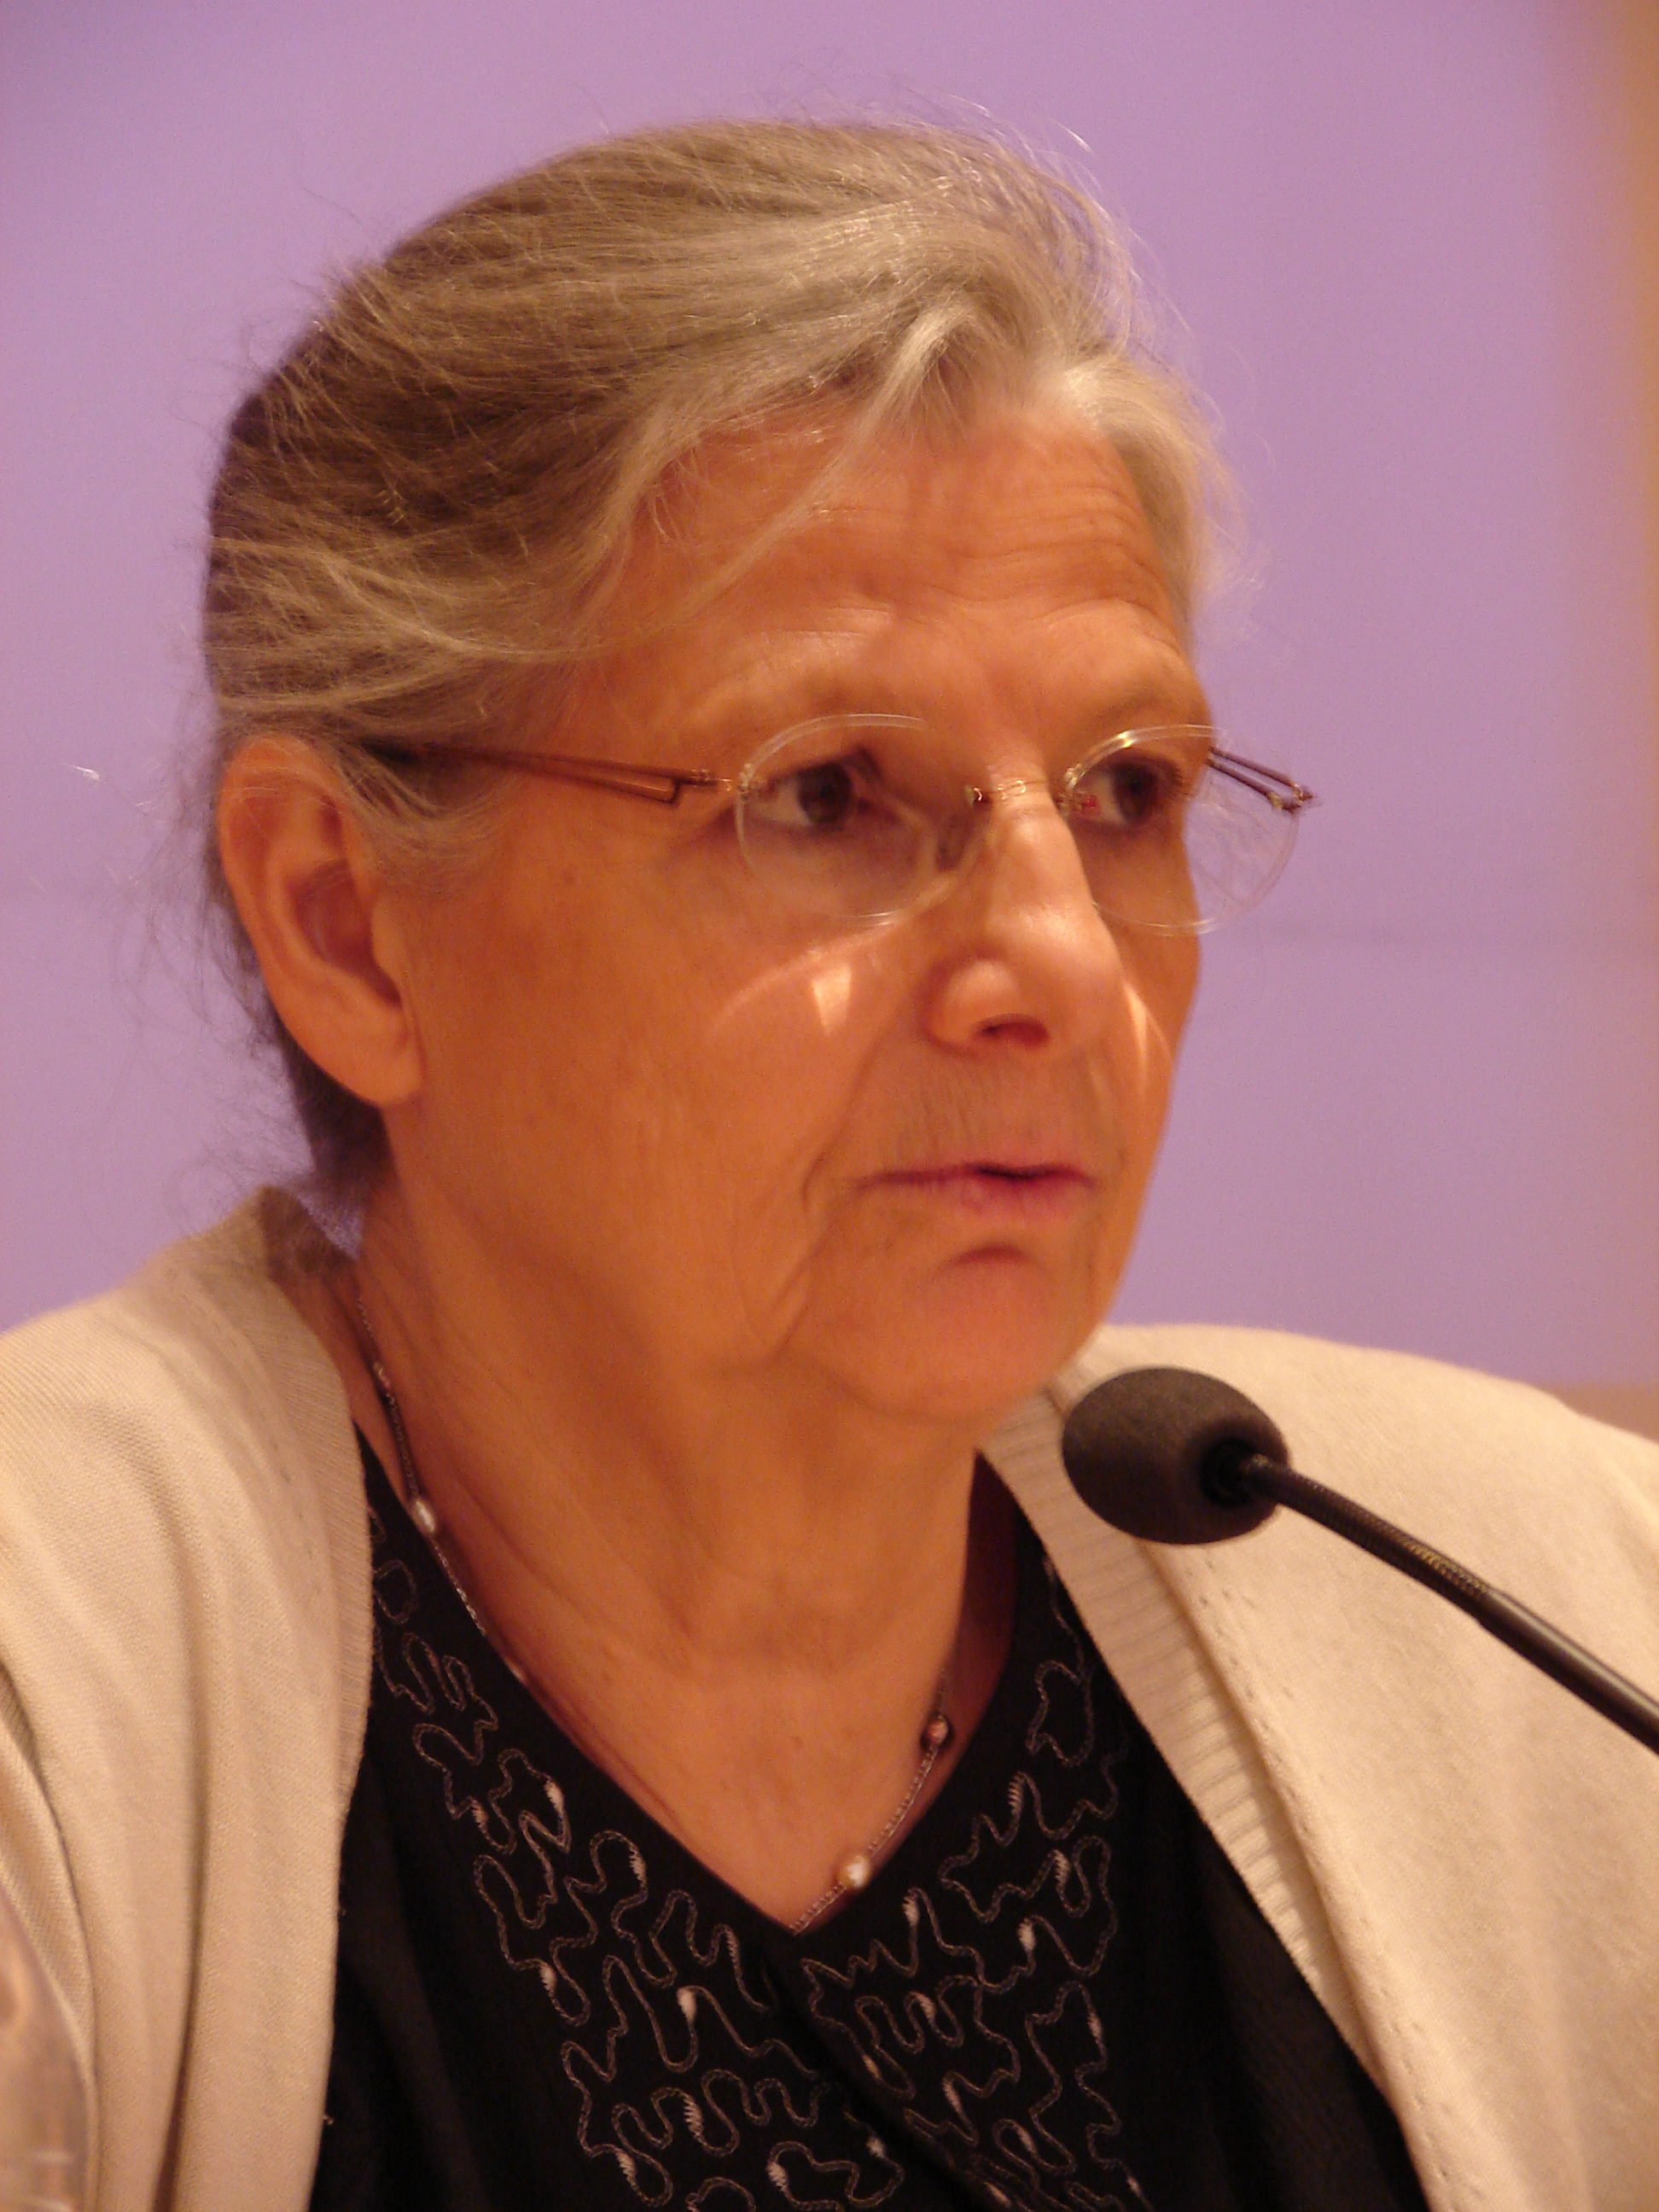 8 mars 2014: Portrait du Dr Annie Thébaud-Mony à l’occasion de la journée internationale des femmes